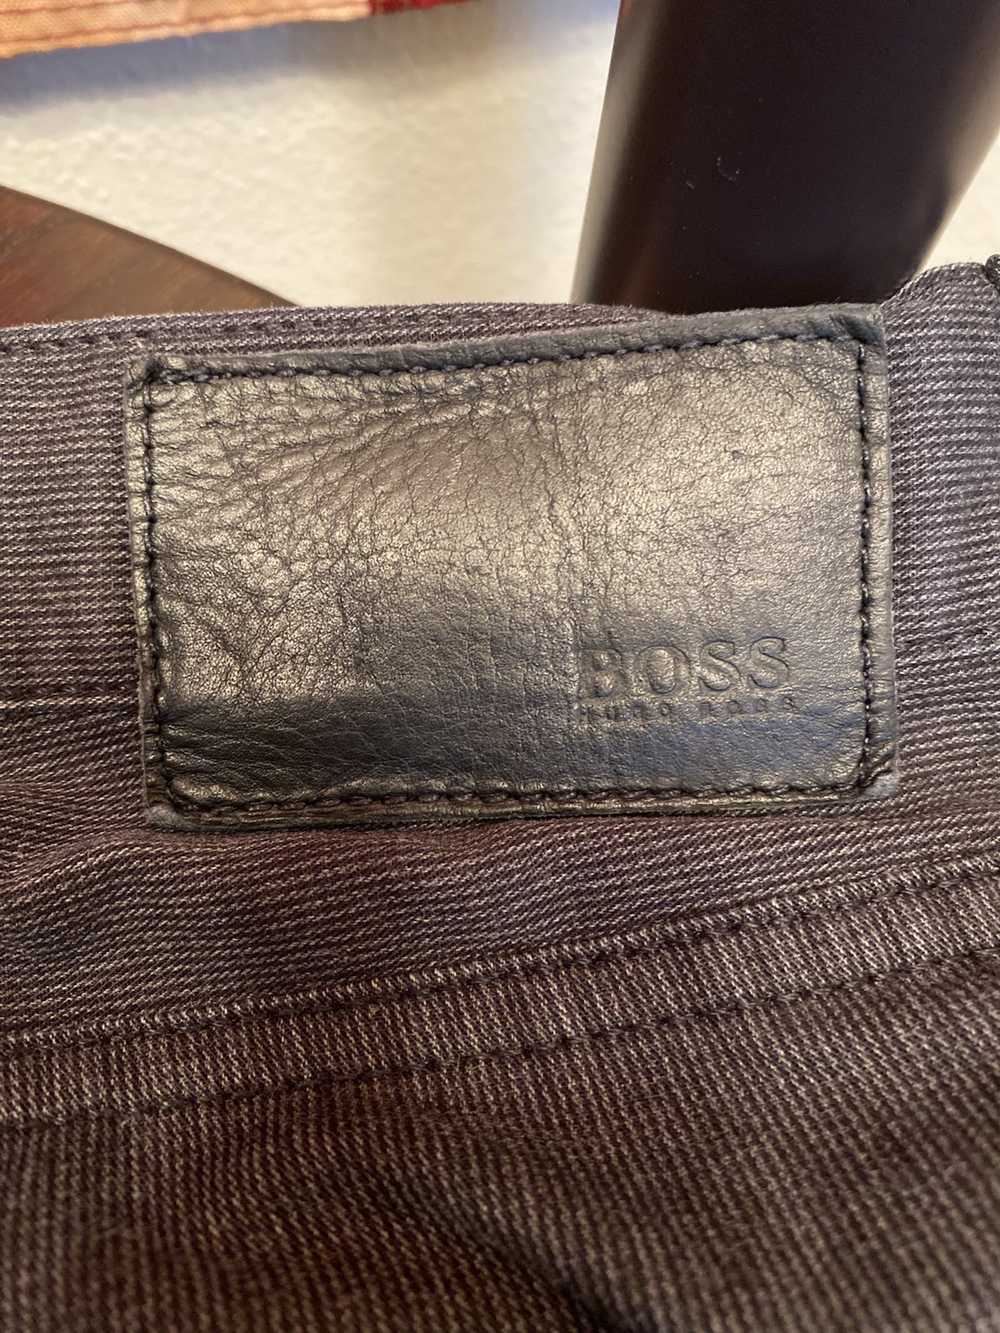 Hugo Boss Hugo Boss jeans - image 8